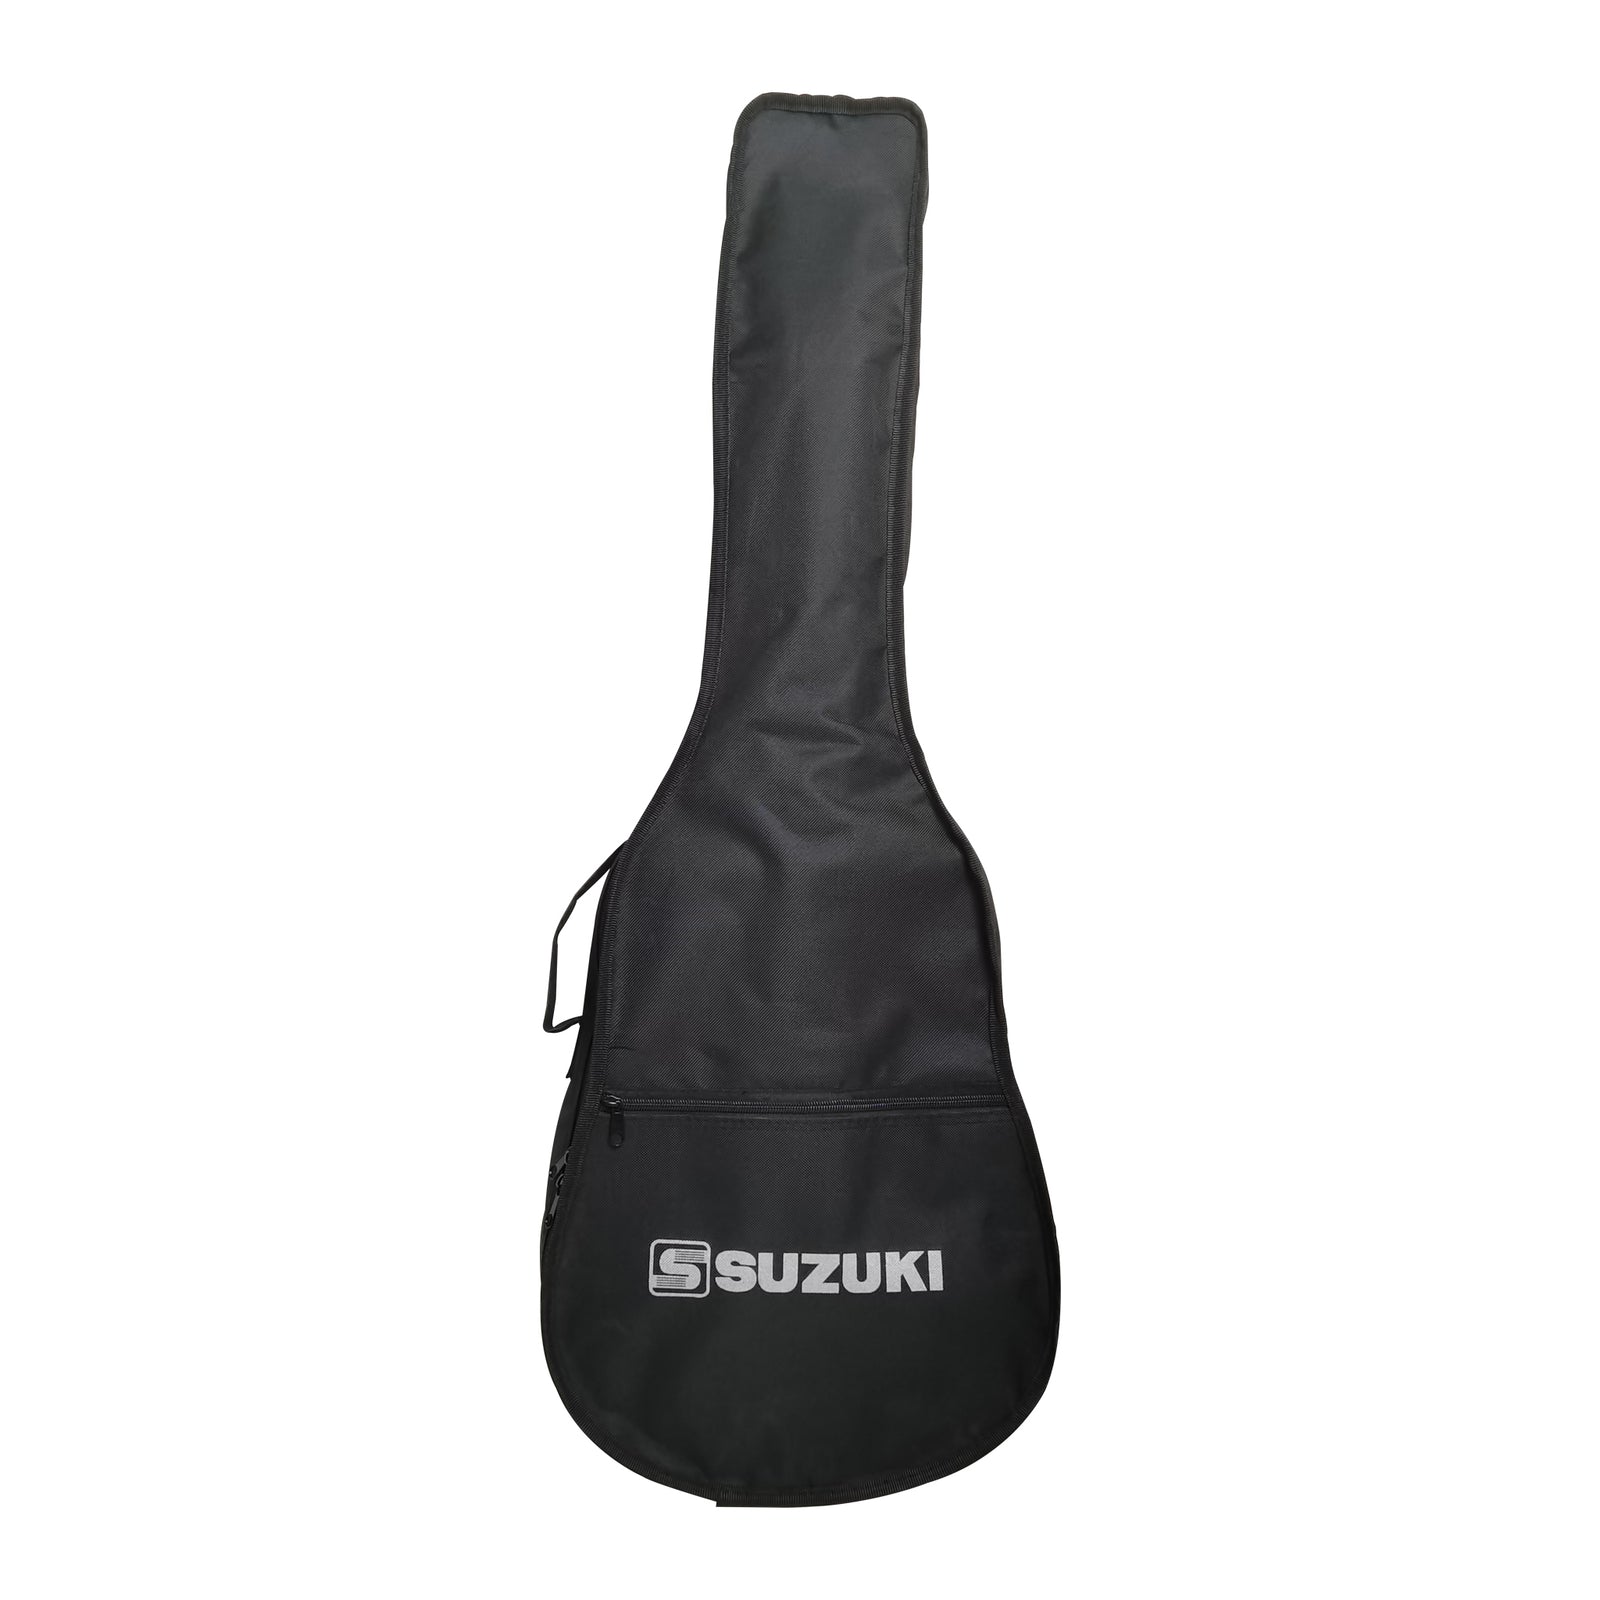 Suzuki SCG-2S 4/4 Classical Guitar Natural